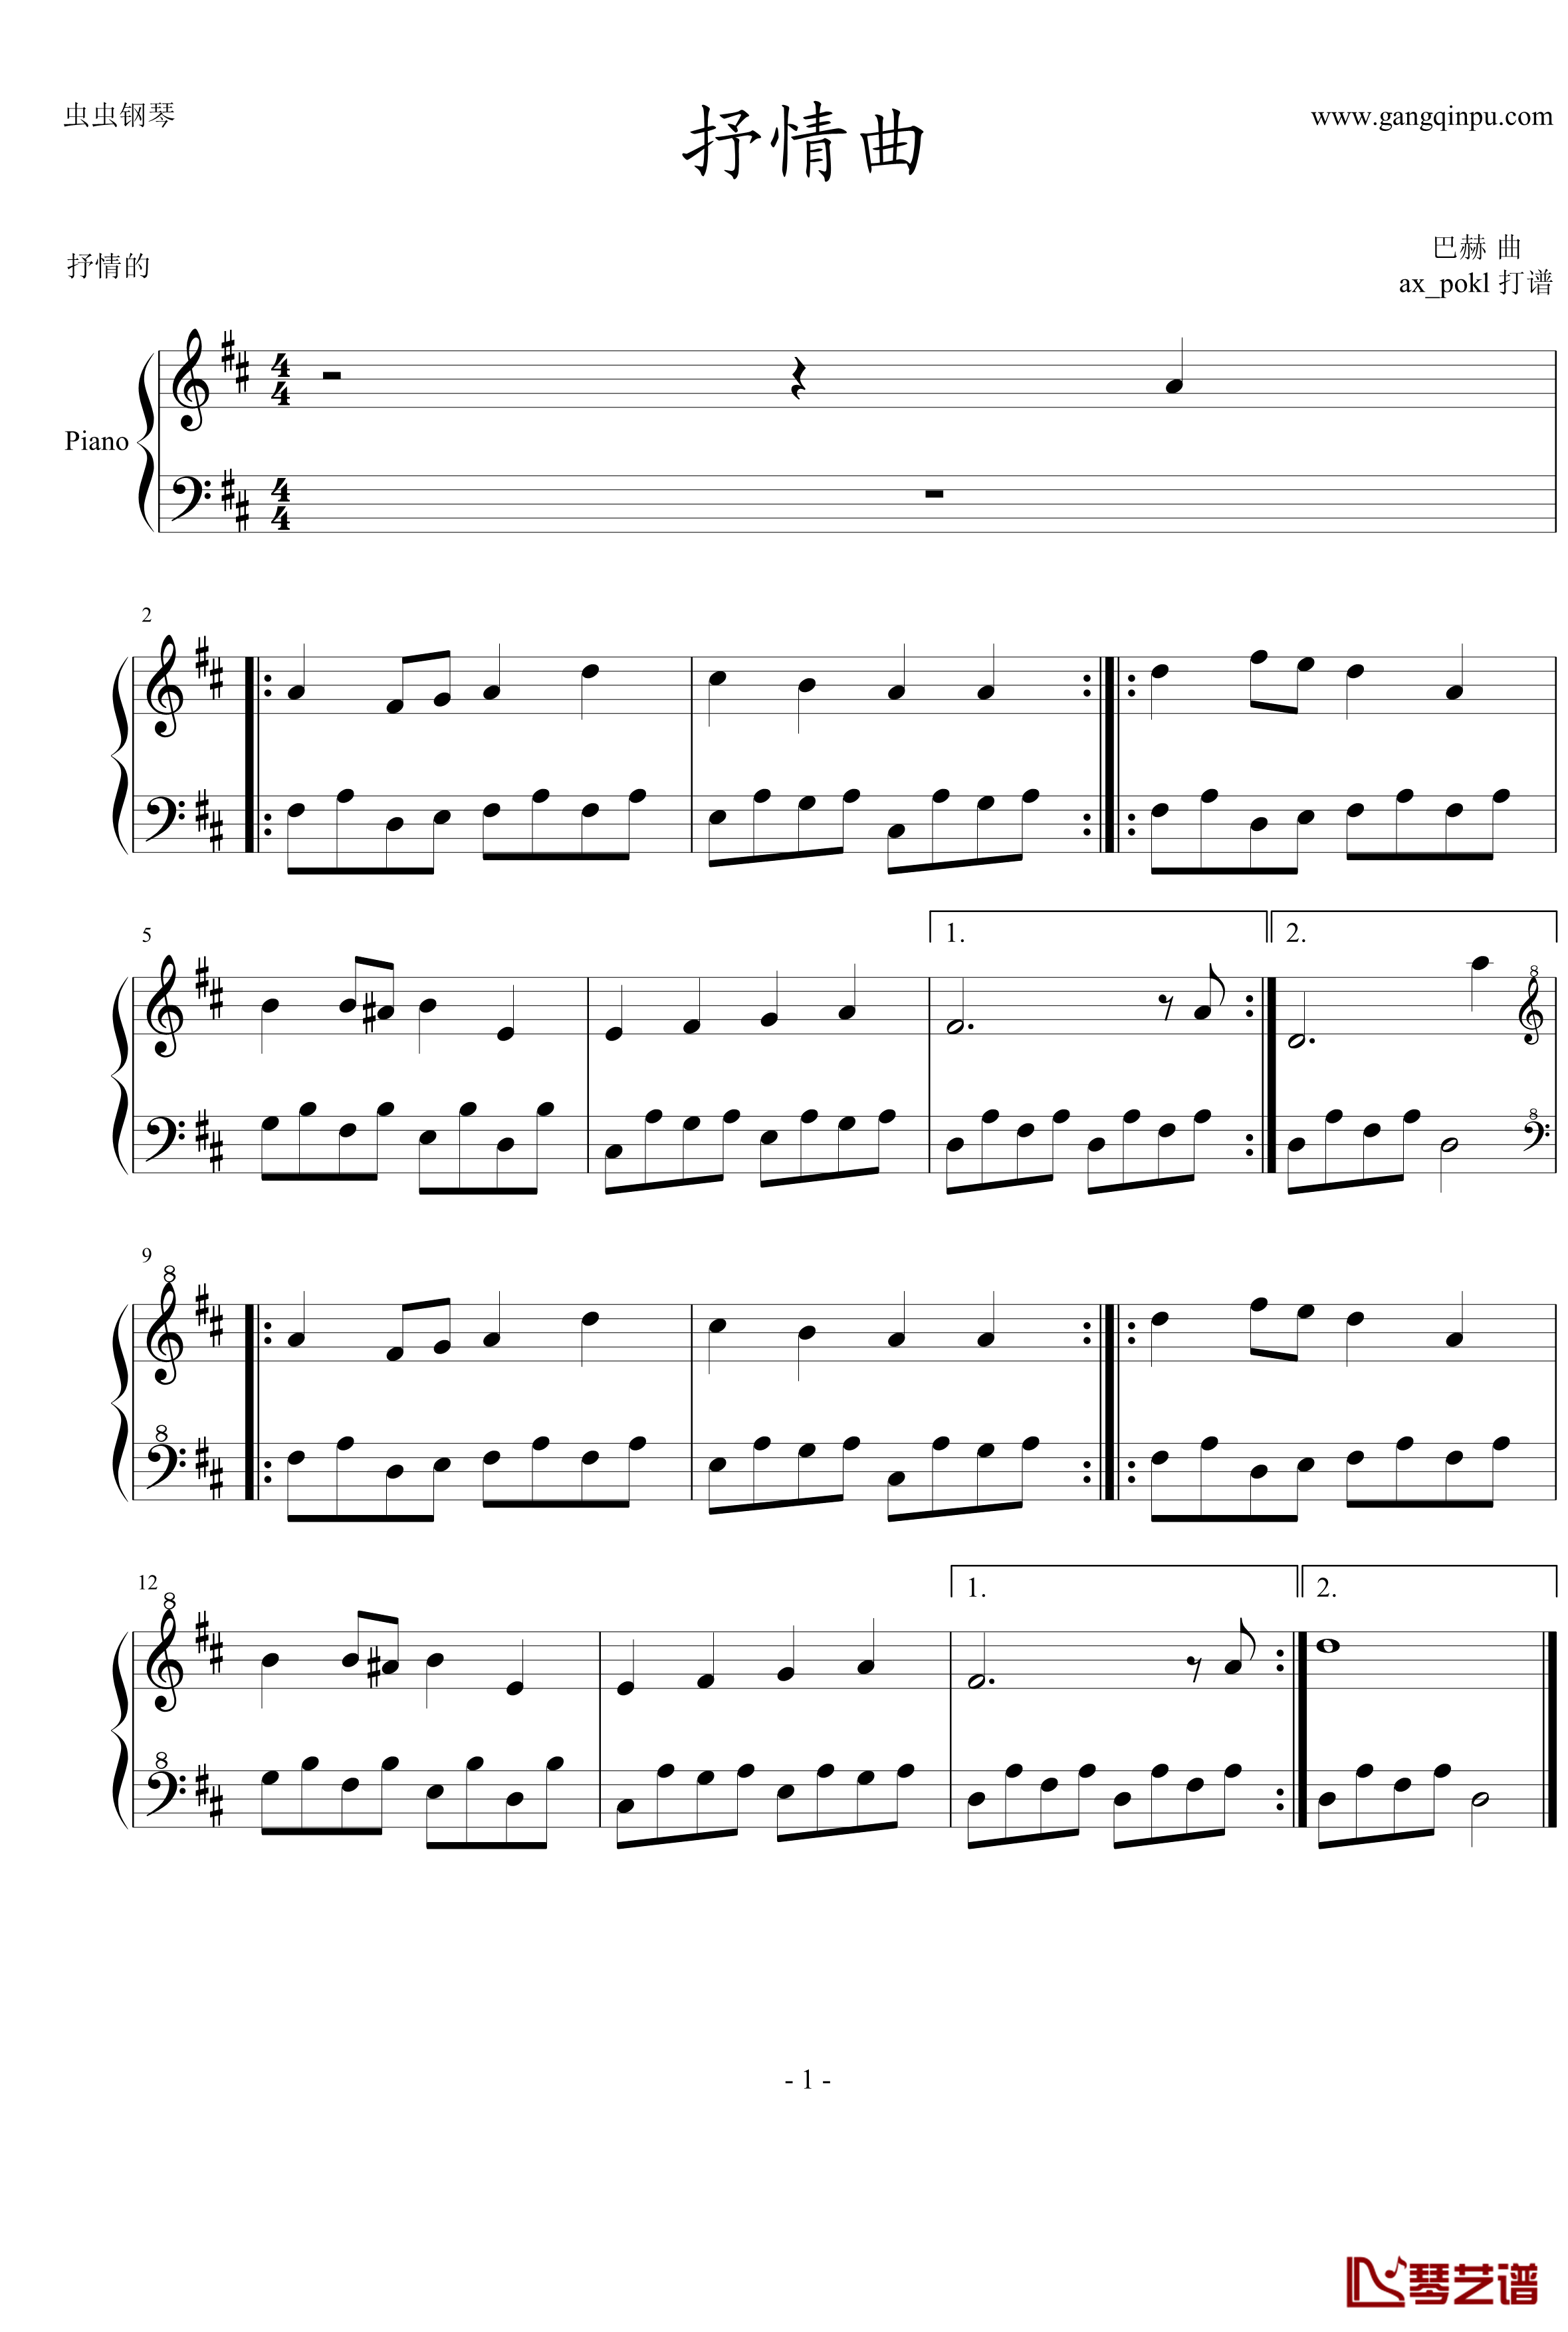 抒情曲钢琴谱-奥芬巴赫1